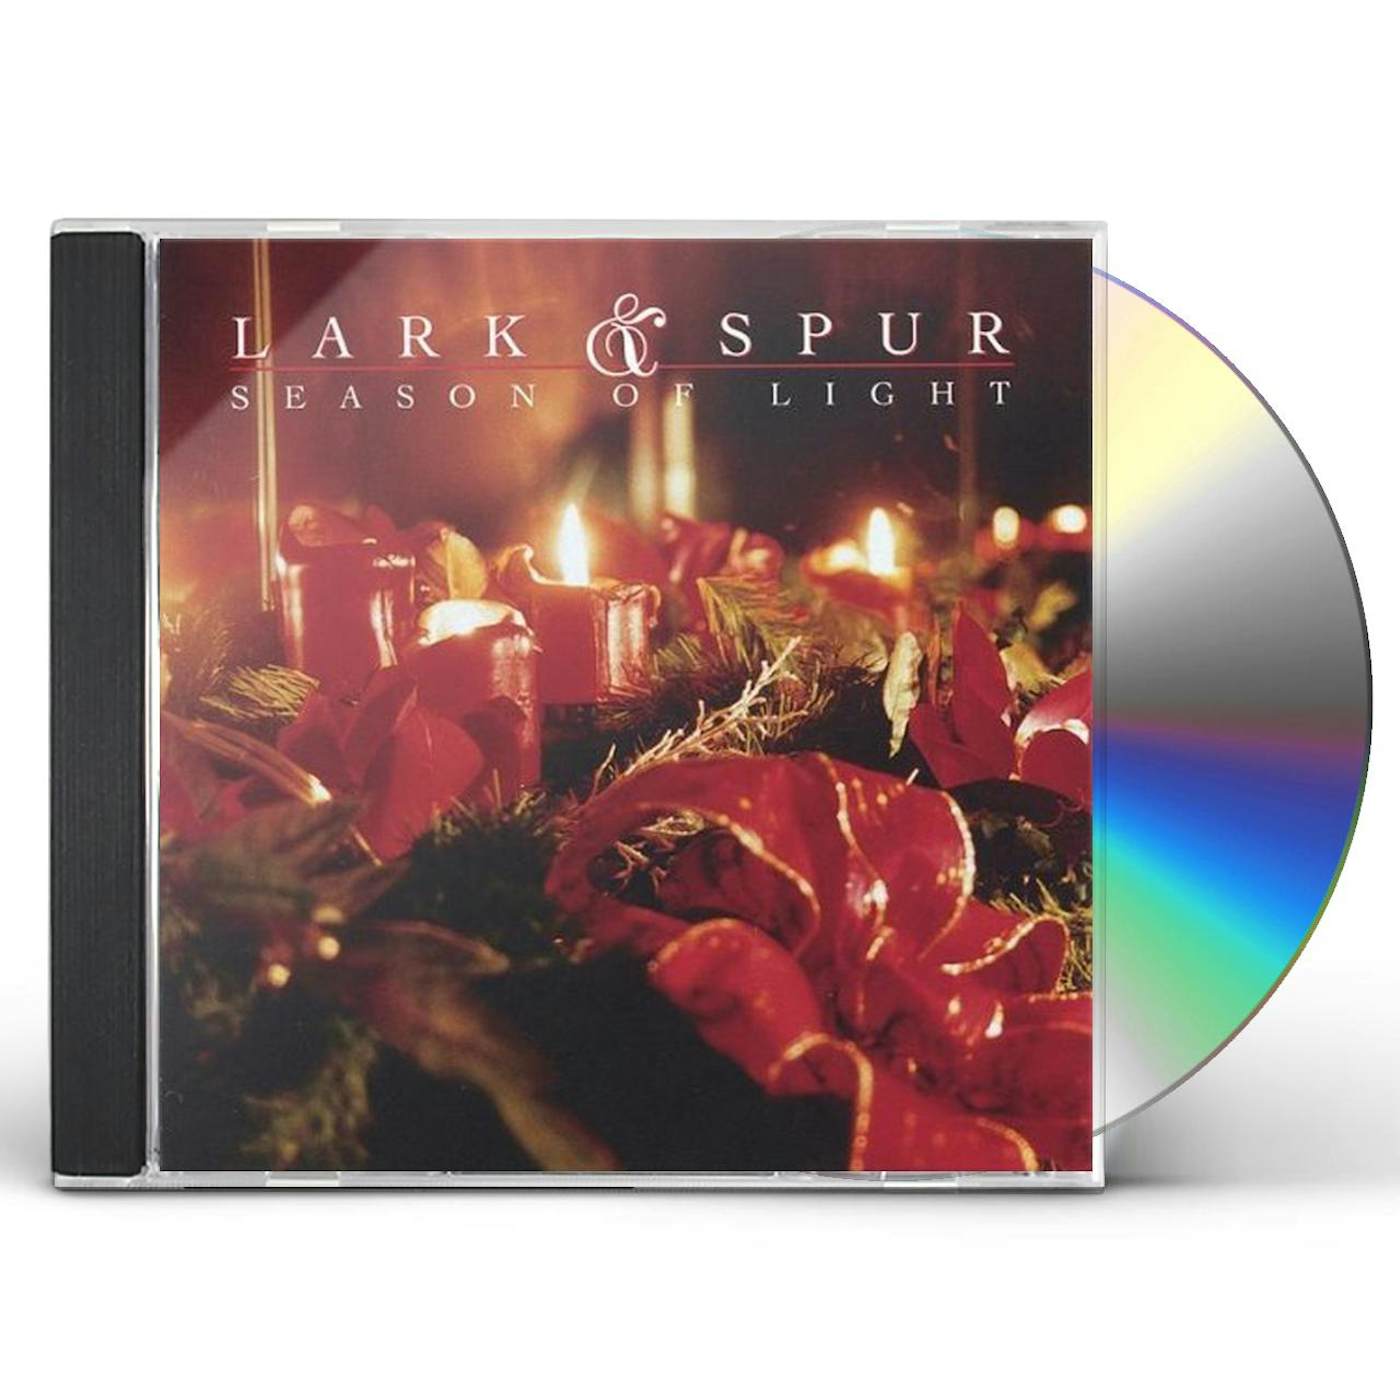 Lark & Spur SEASON OF LIGHT CD